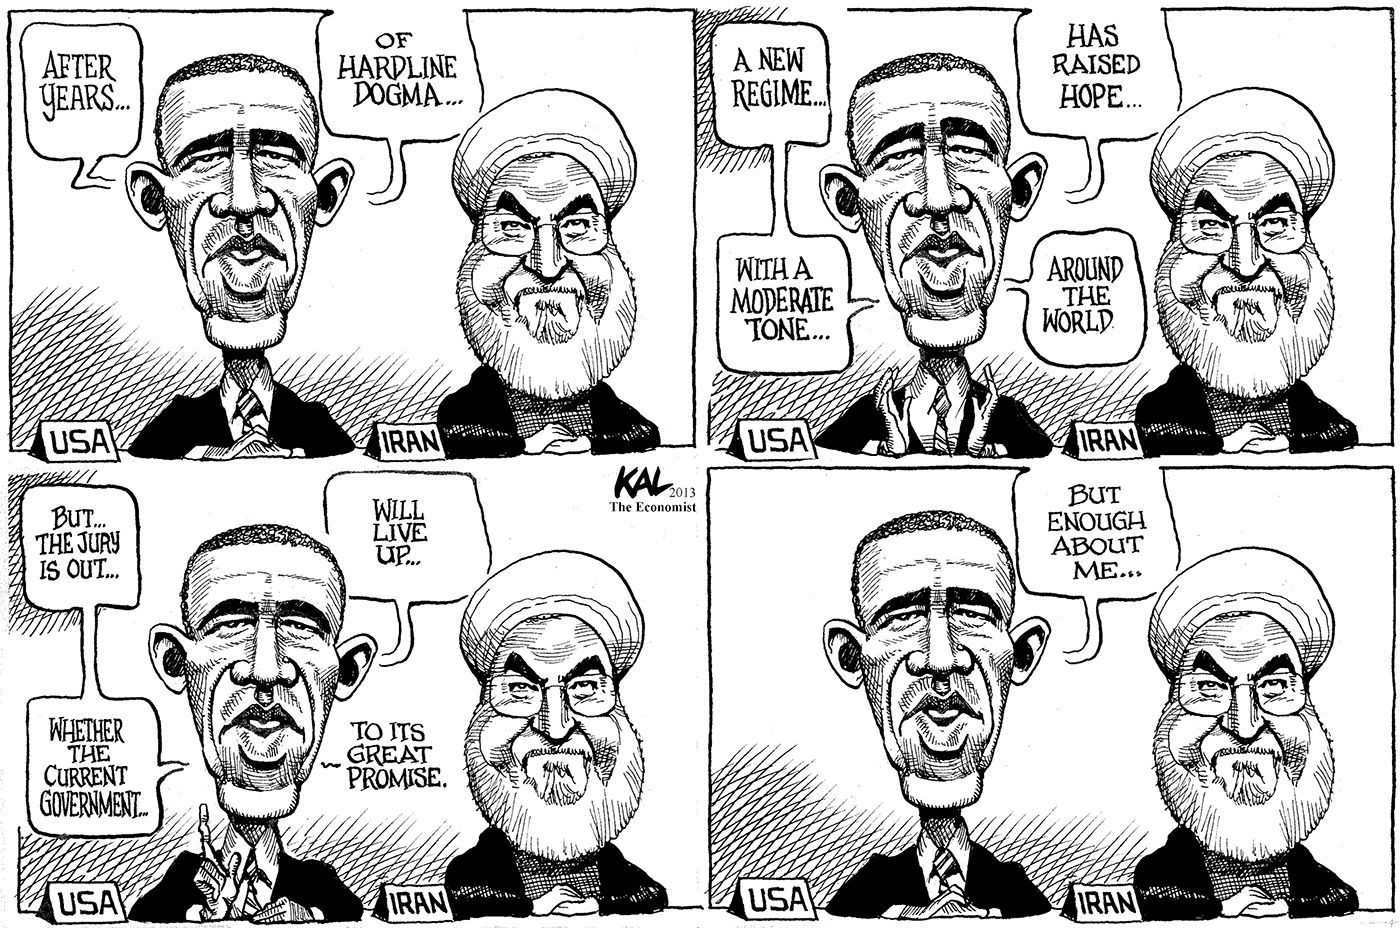 Obama & Iran